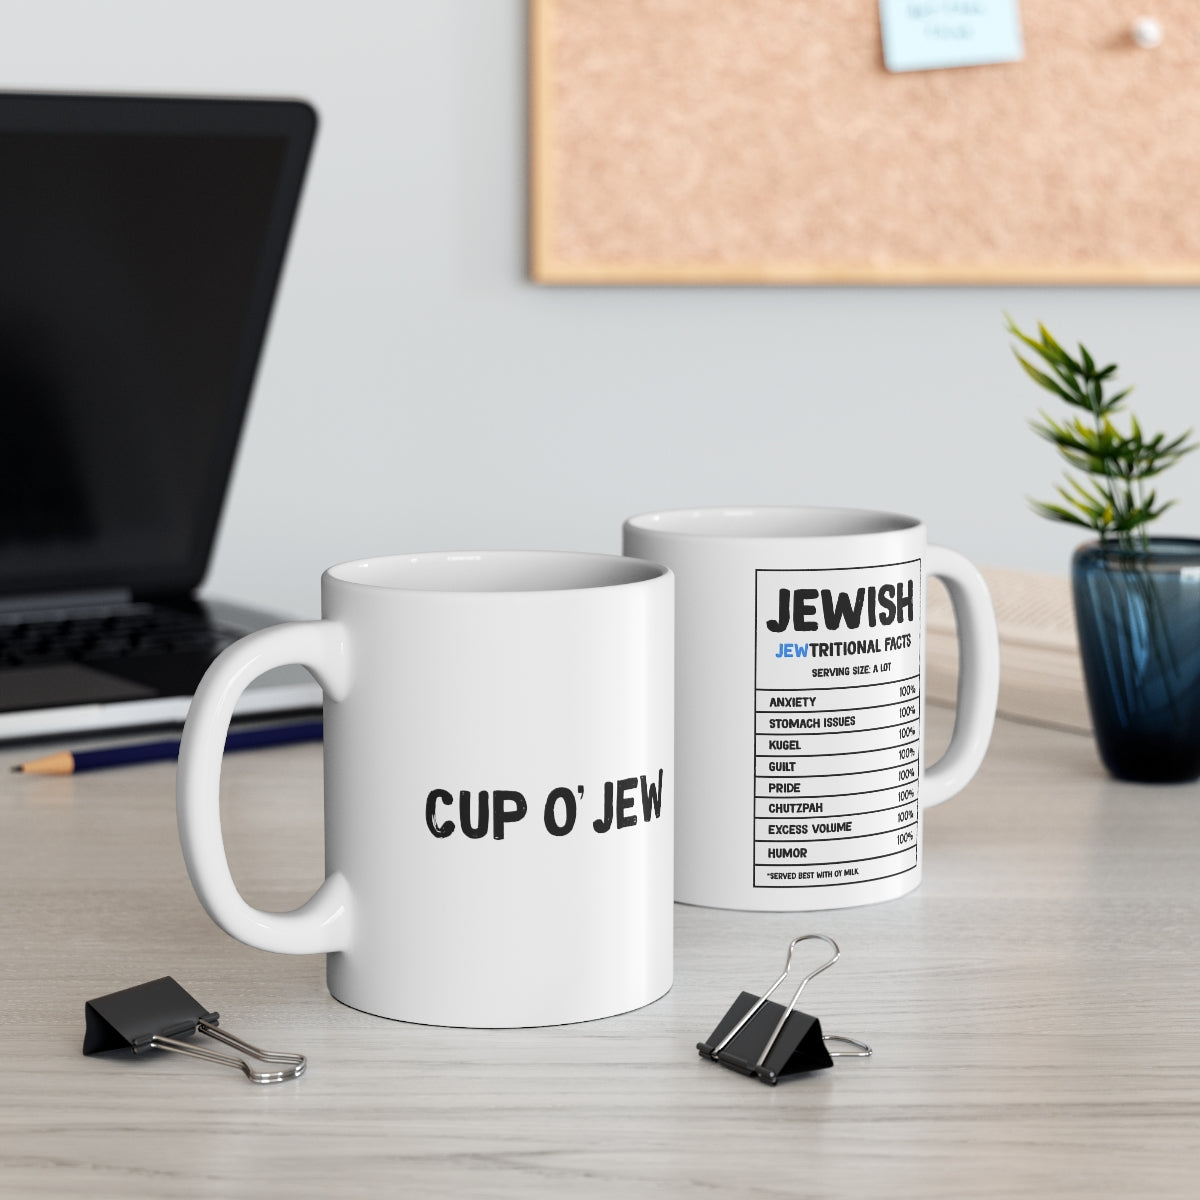 Cup O' Jew Mug